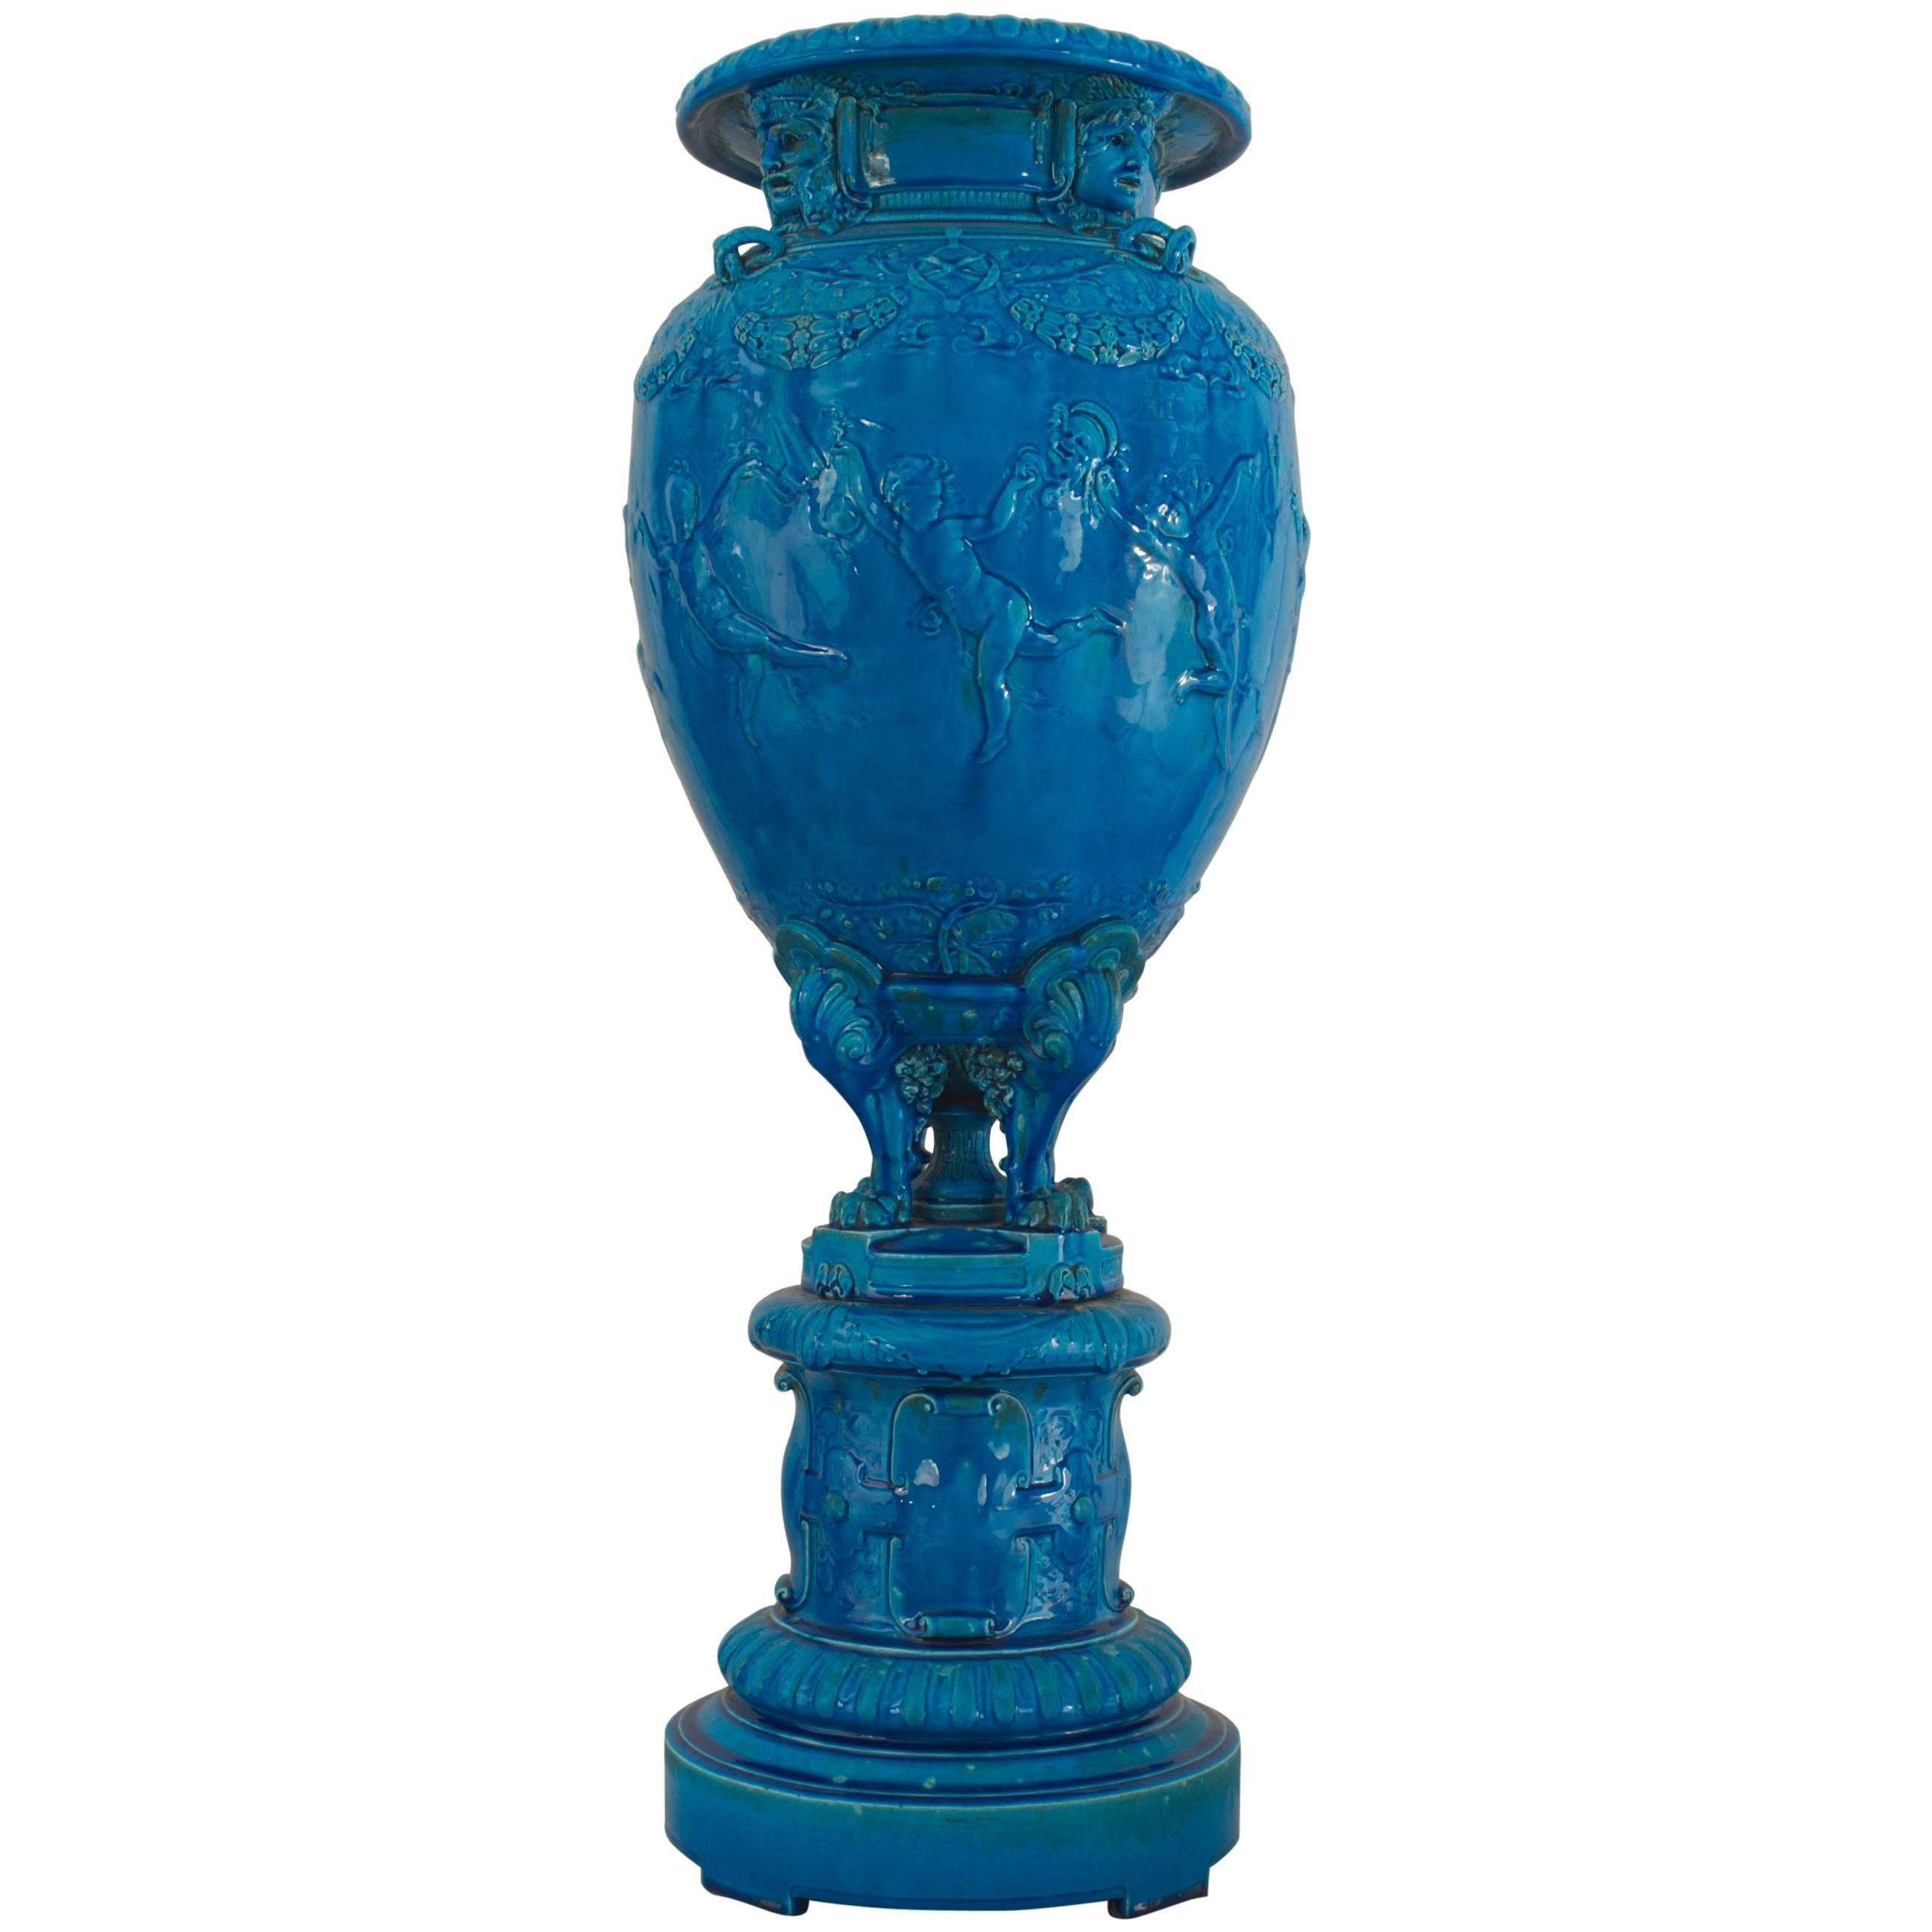 Urne de Sèvres en turquoise de style victorien français